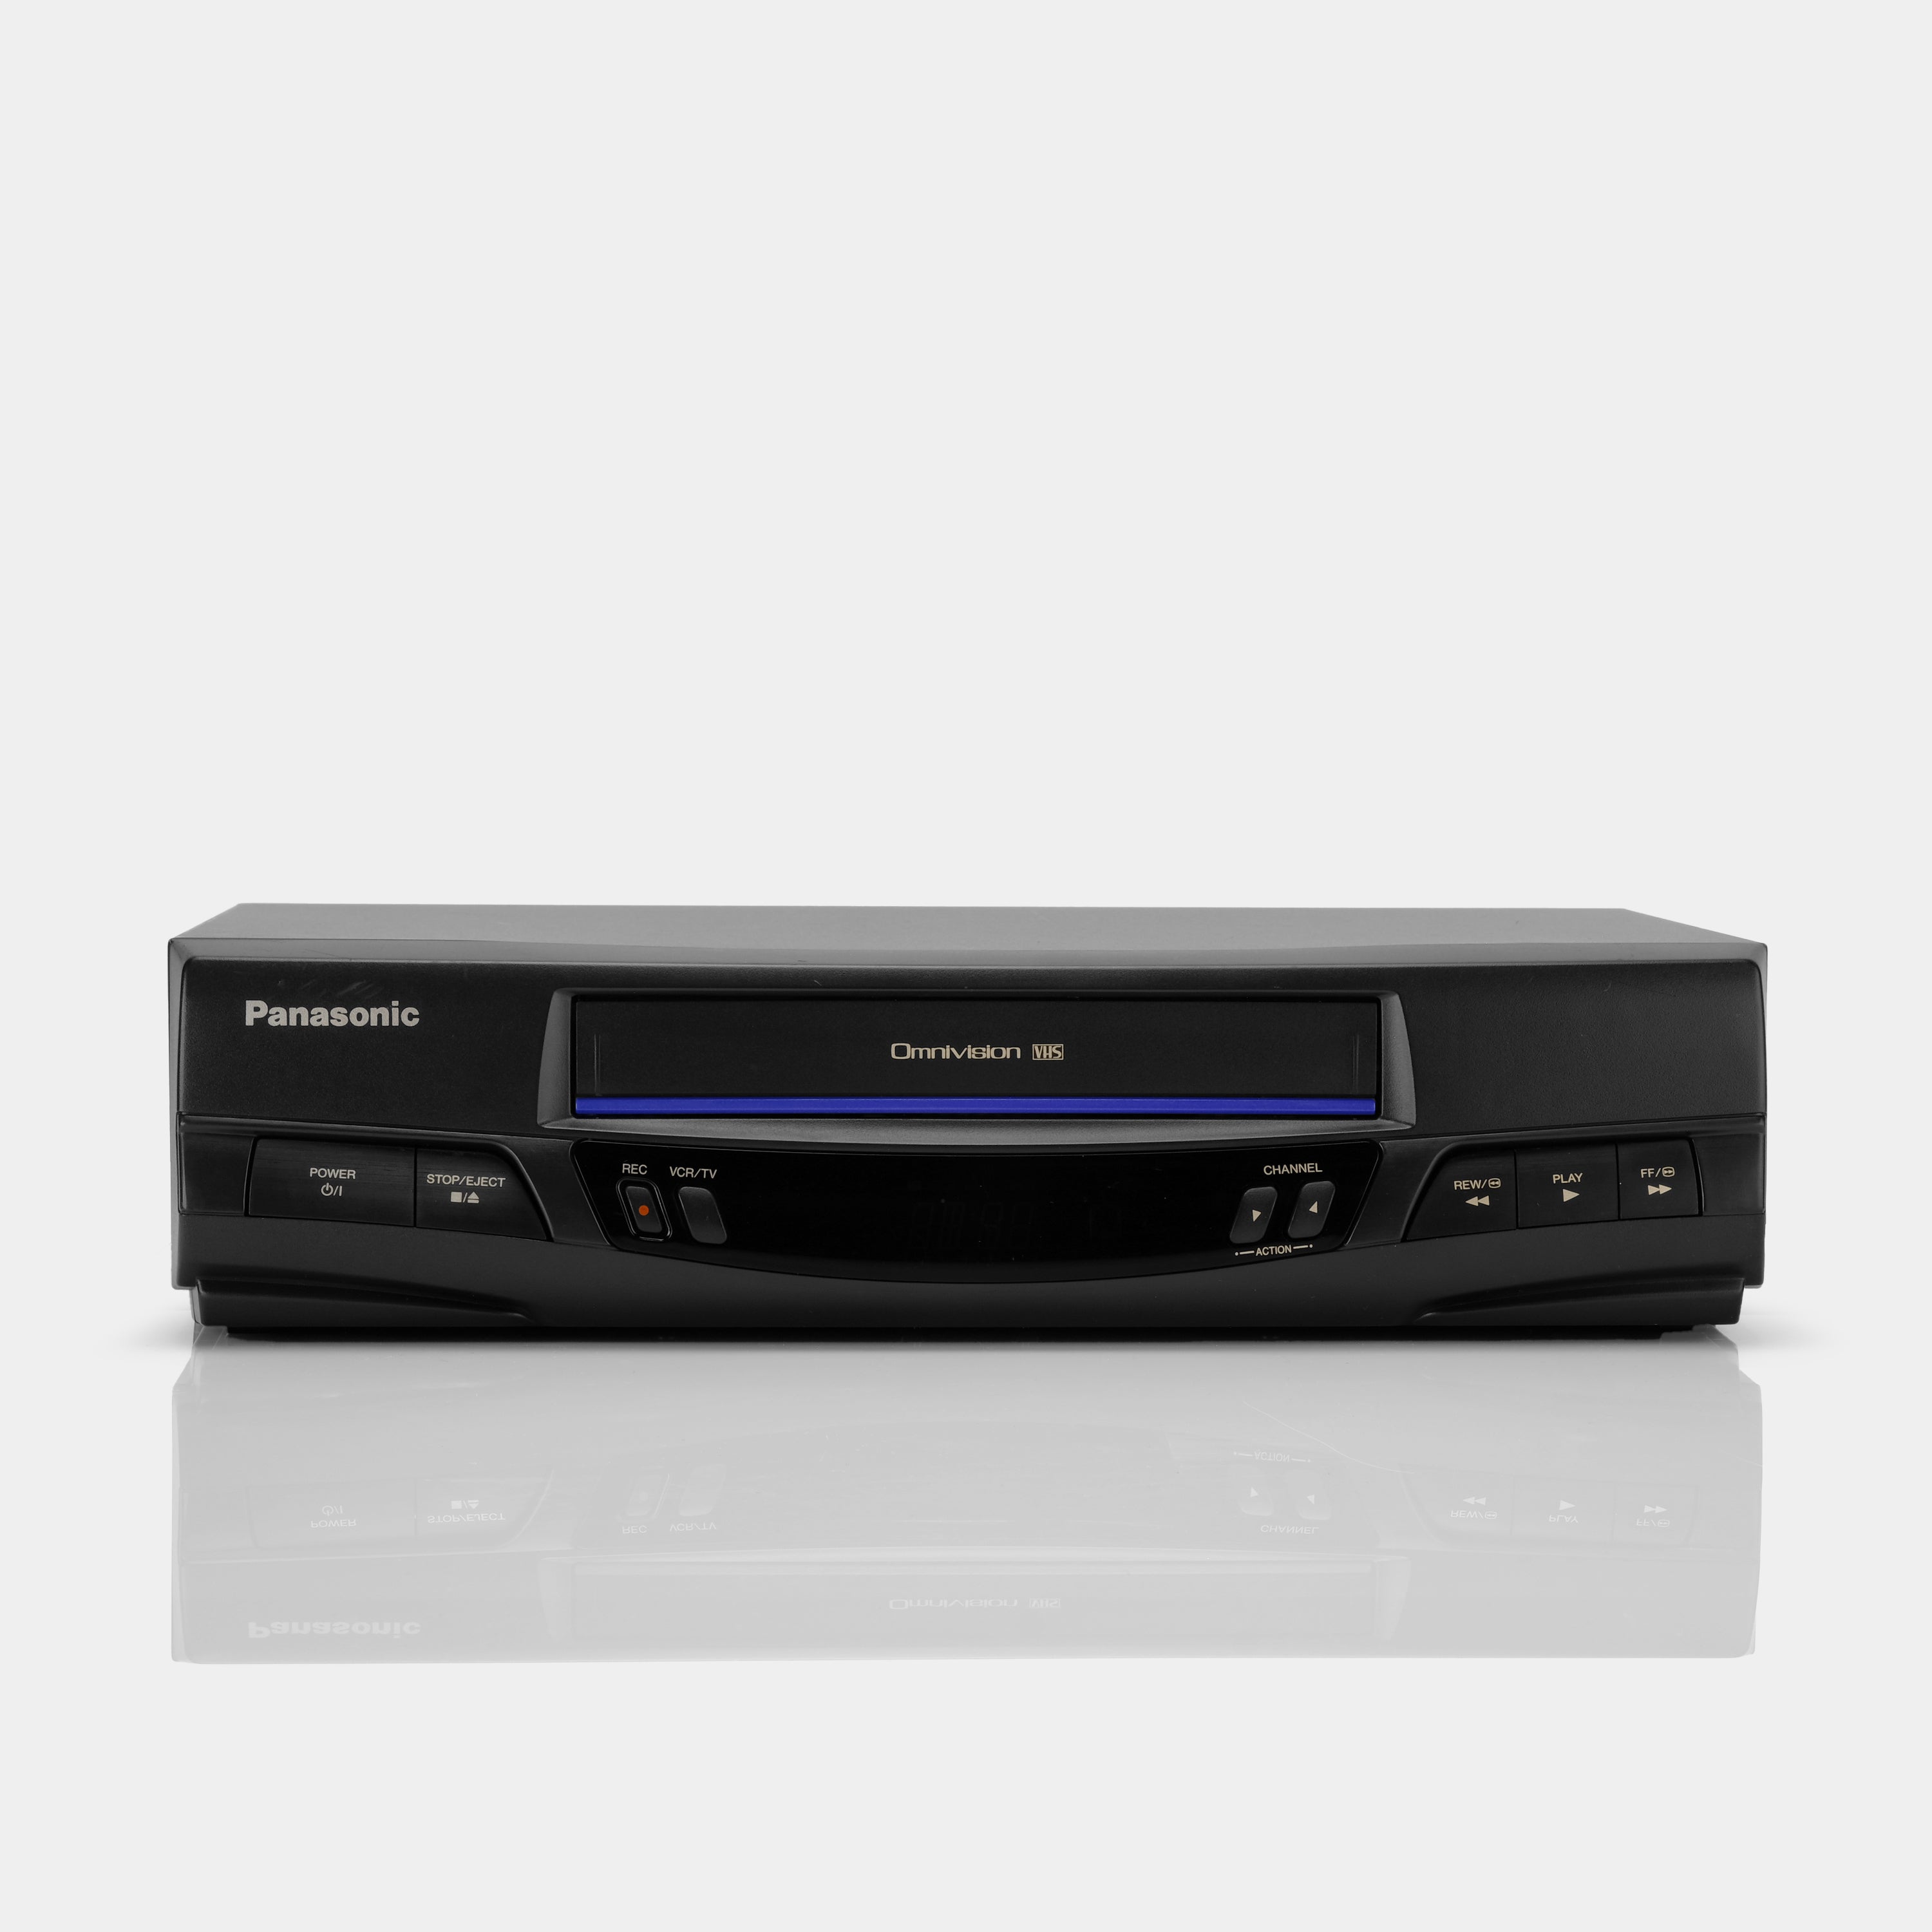 Panasonic PQV-V200 VCR VHS Player